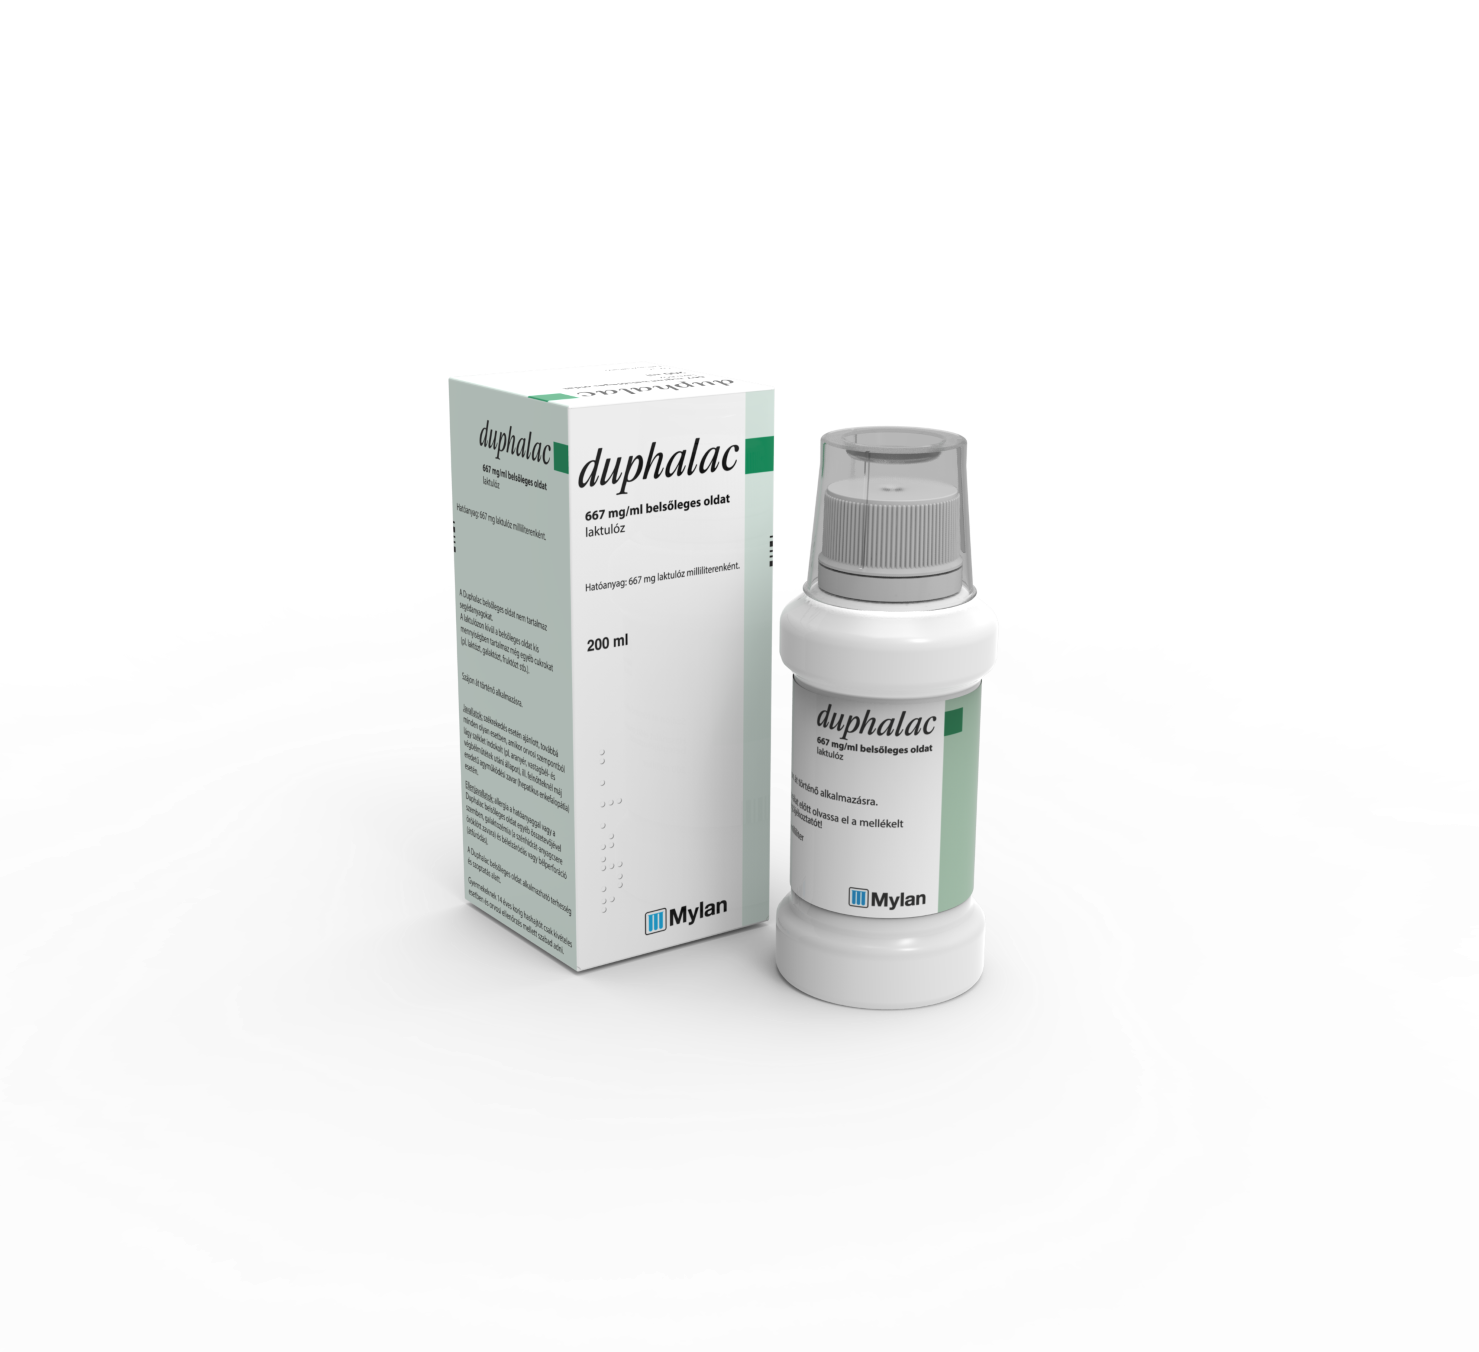 Duphalac 667 mg/ml belsőleges oldat